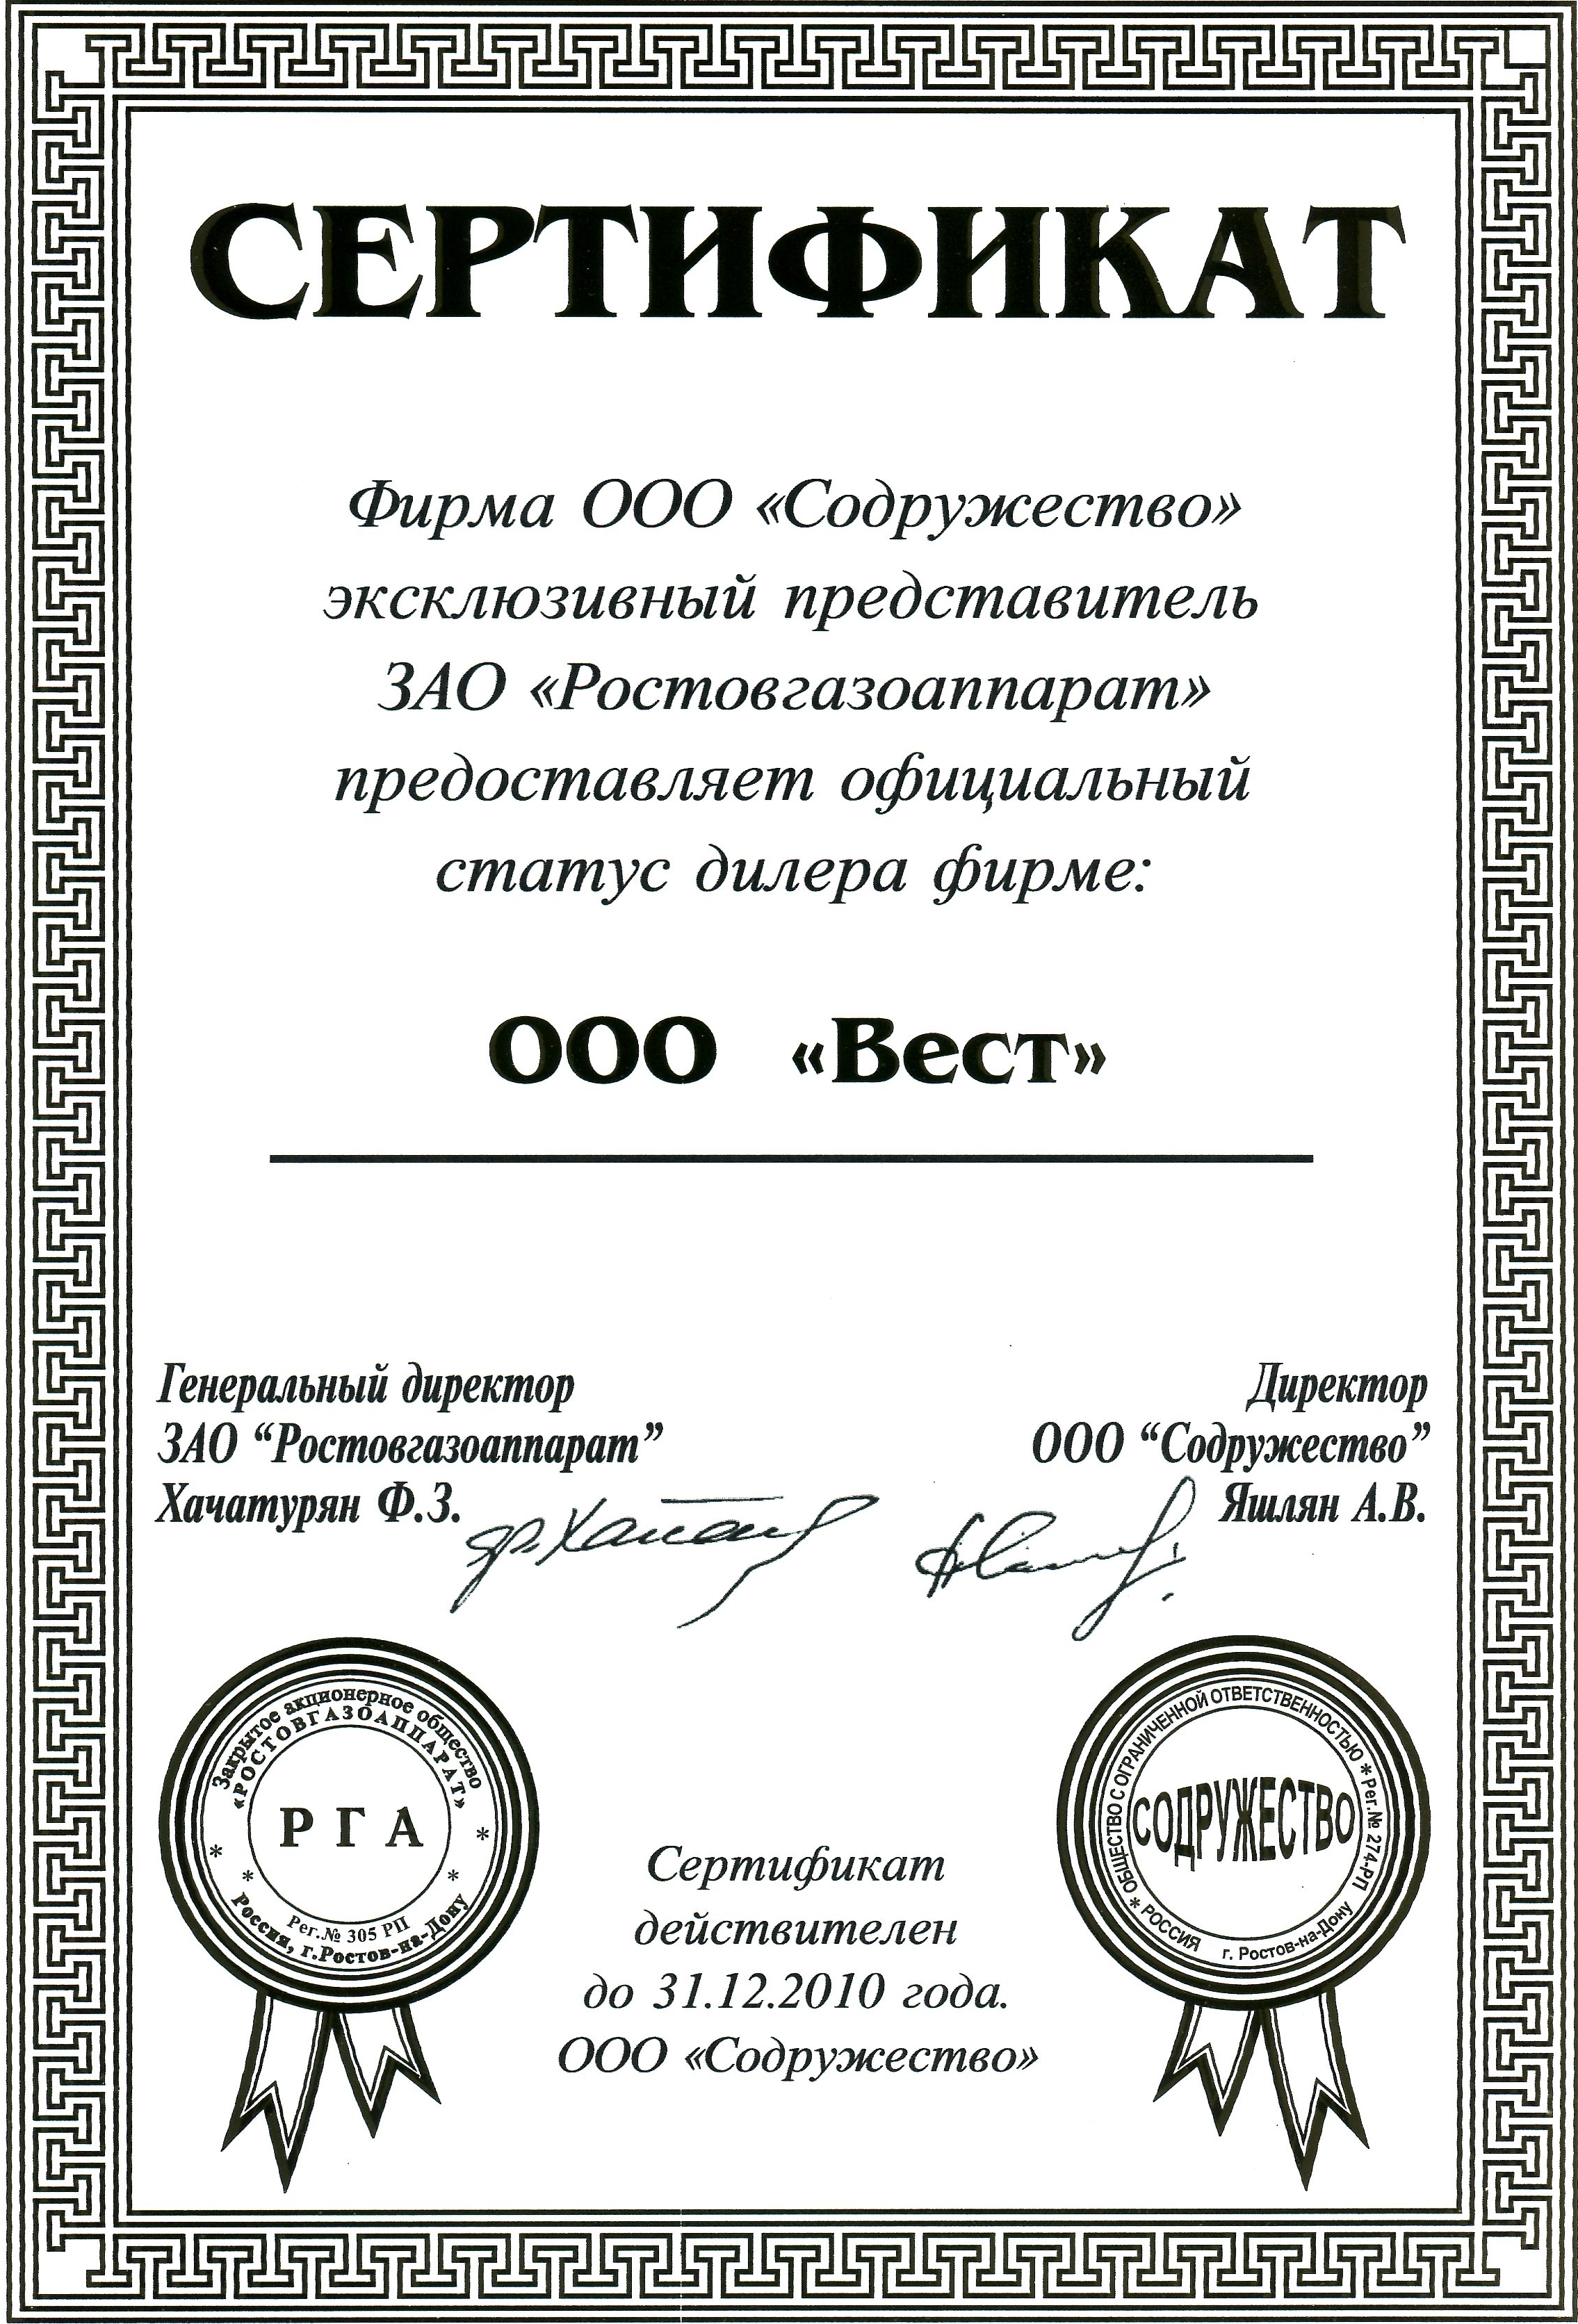 АО Содружество ООО Ростовгазаппарат 2010 г.